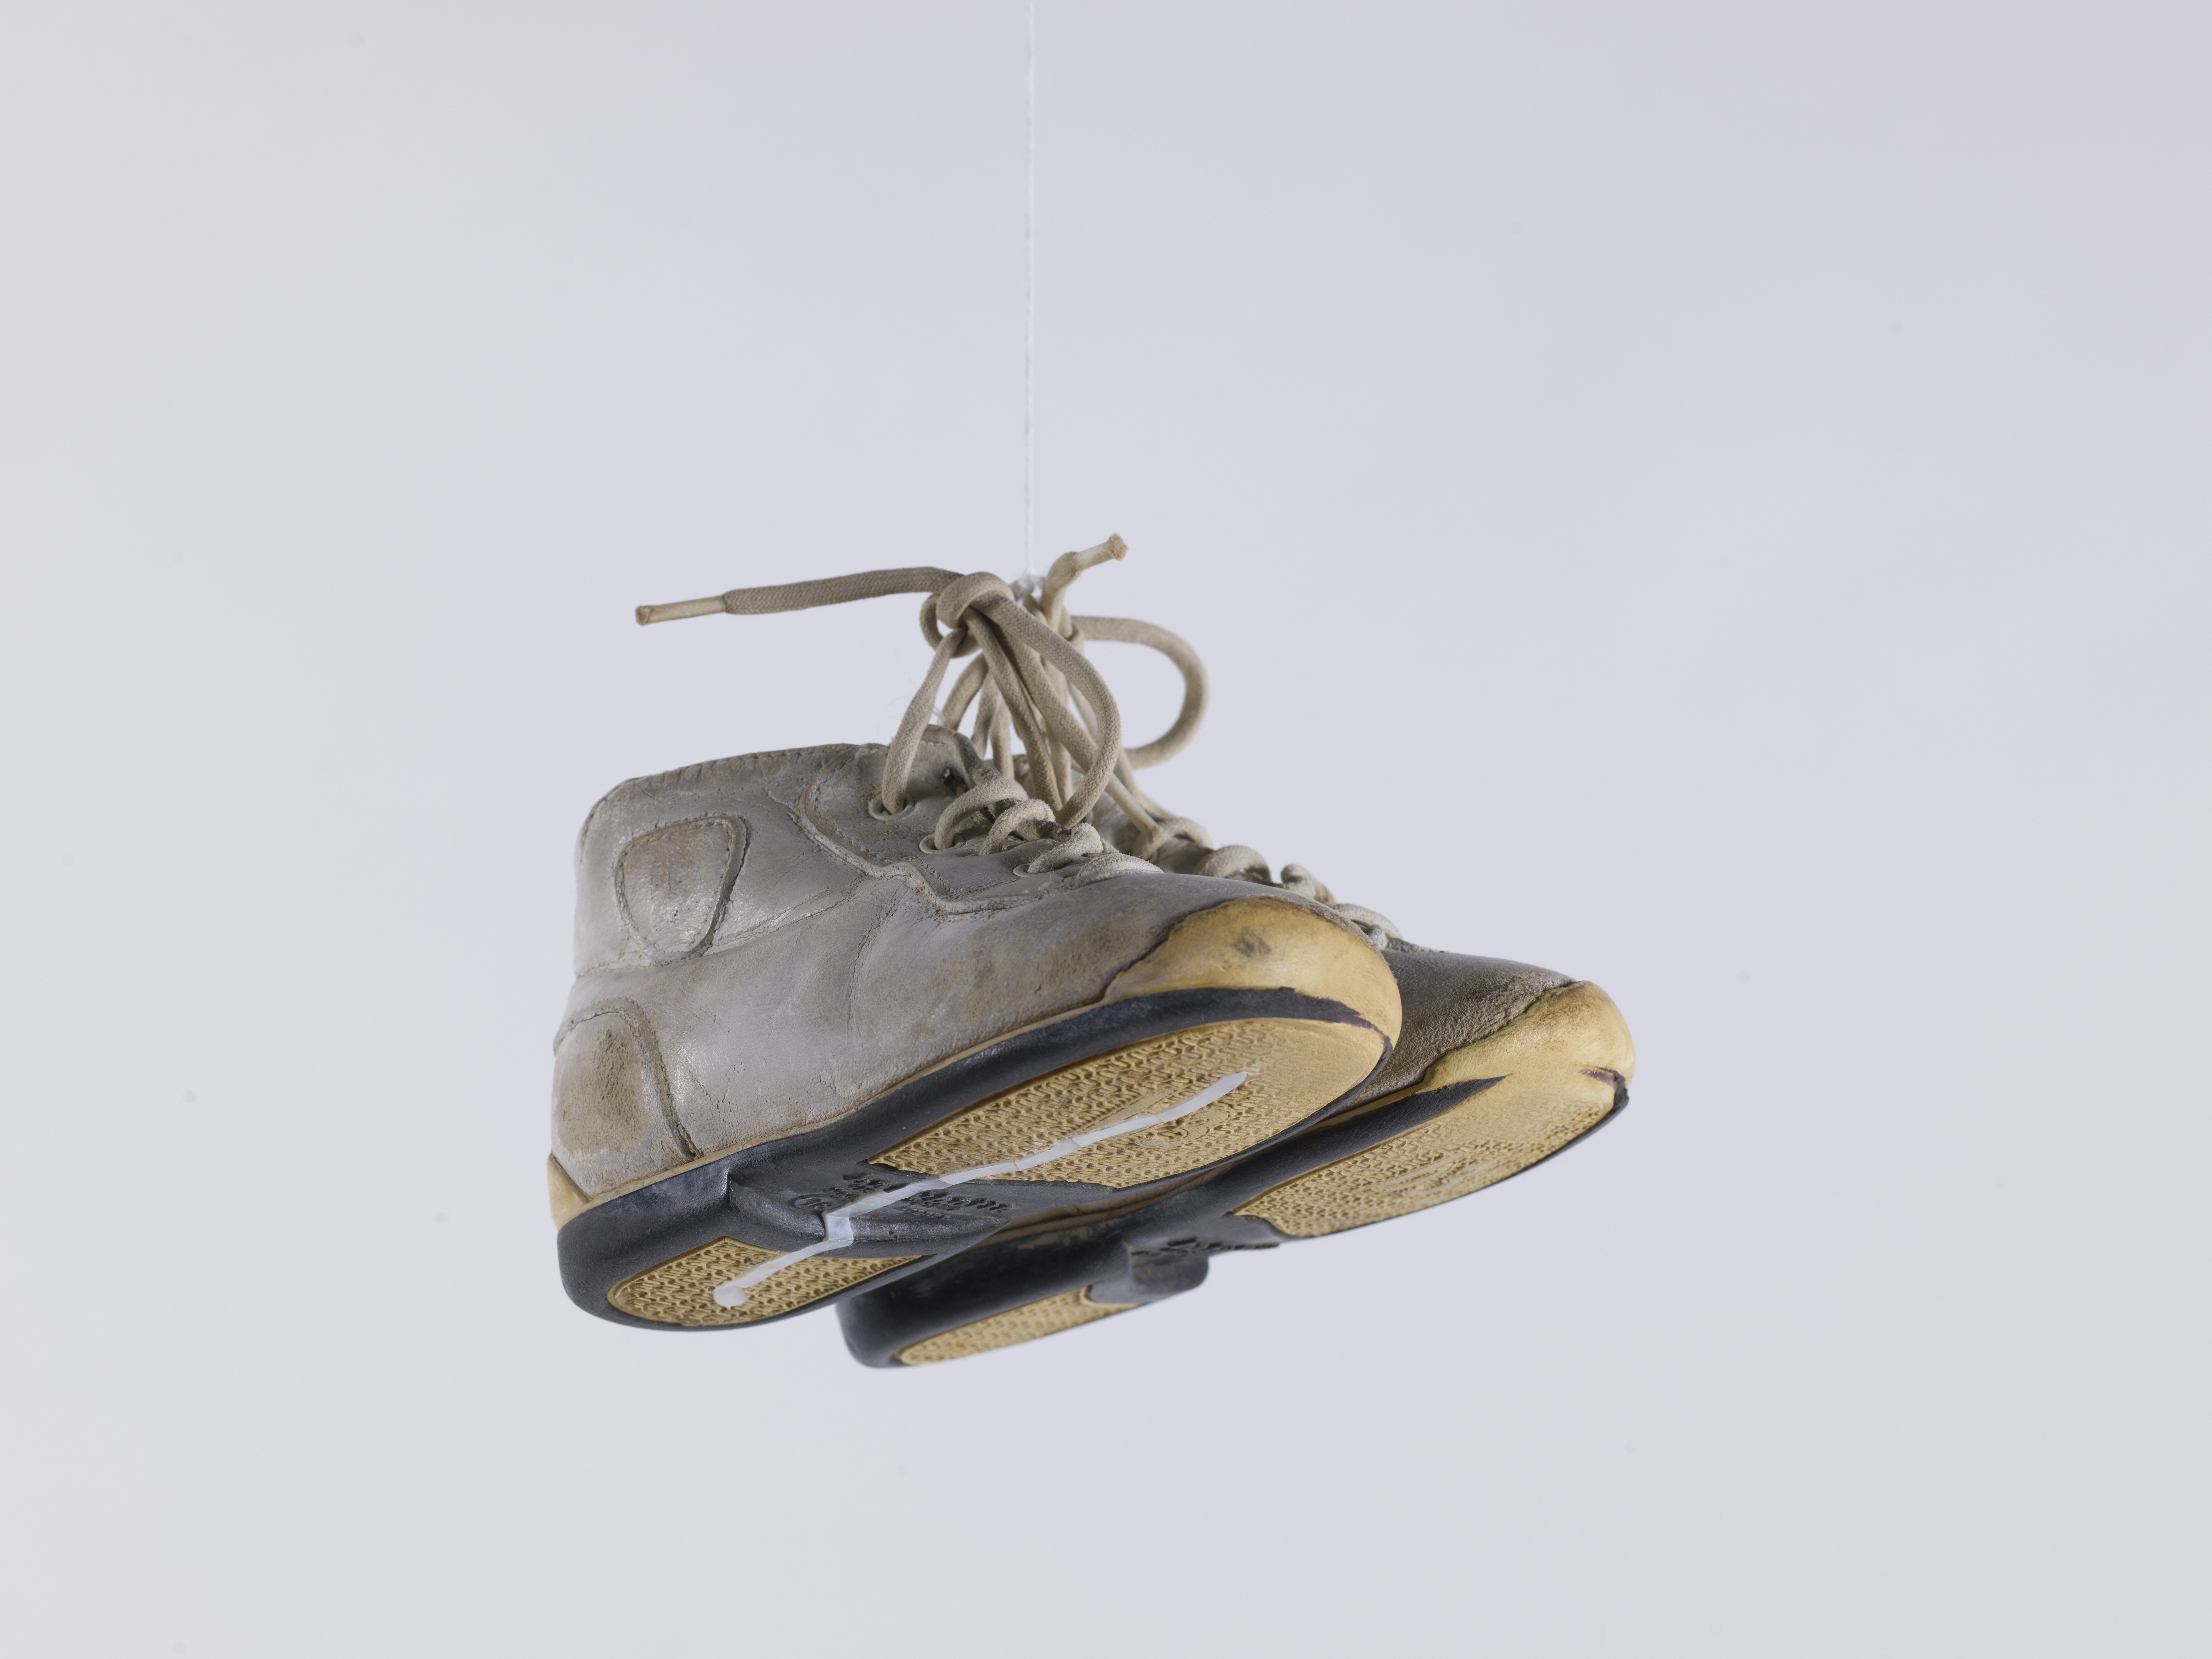 Une paire de baskets d'enfants est suspendue devant un fonds blanc par les lacets des chaussures. Sous une des semelles jaunes, on peut voir un tracé en nacre.